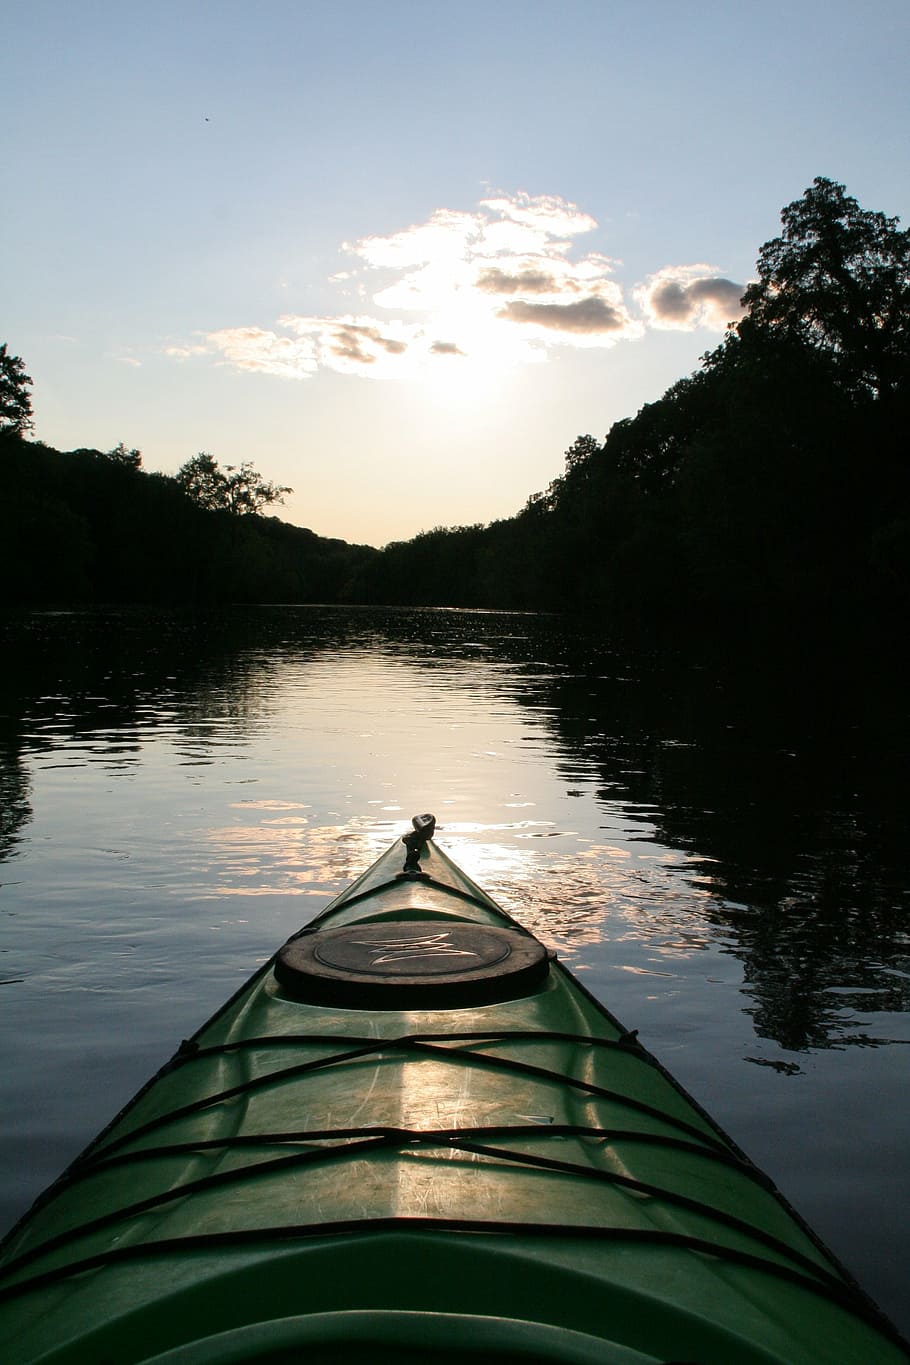 green, kayak, water, trees, river, kayaking, paddling, summer, sunset, recreation